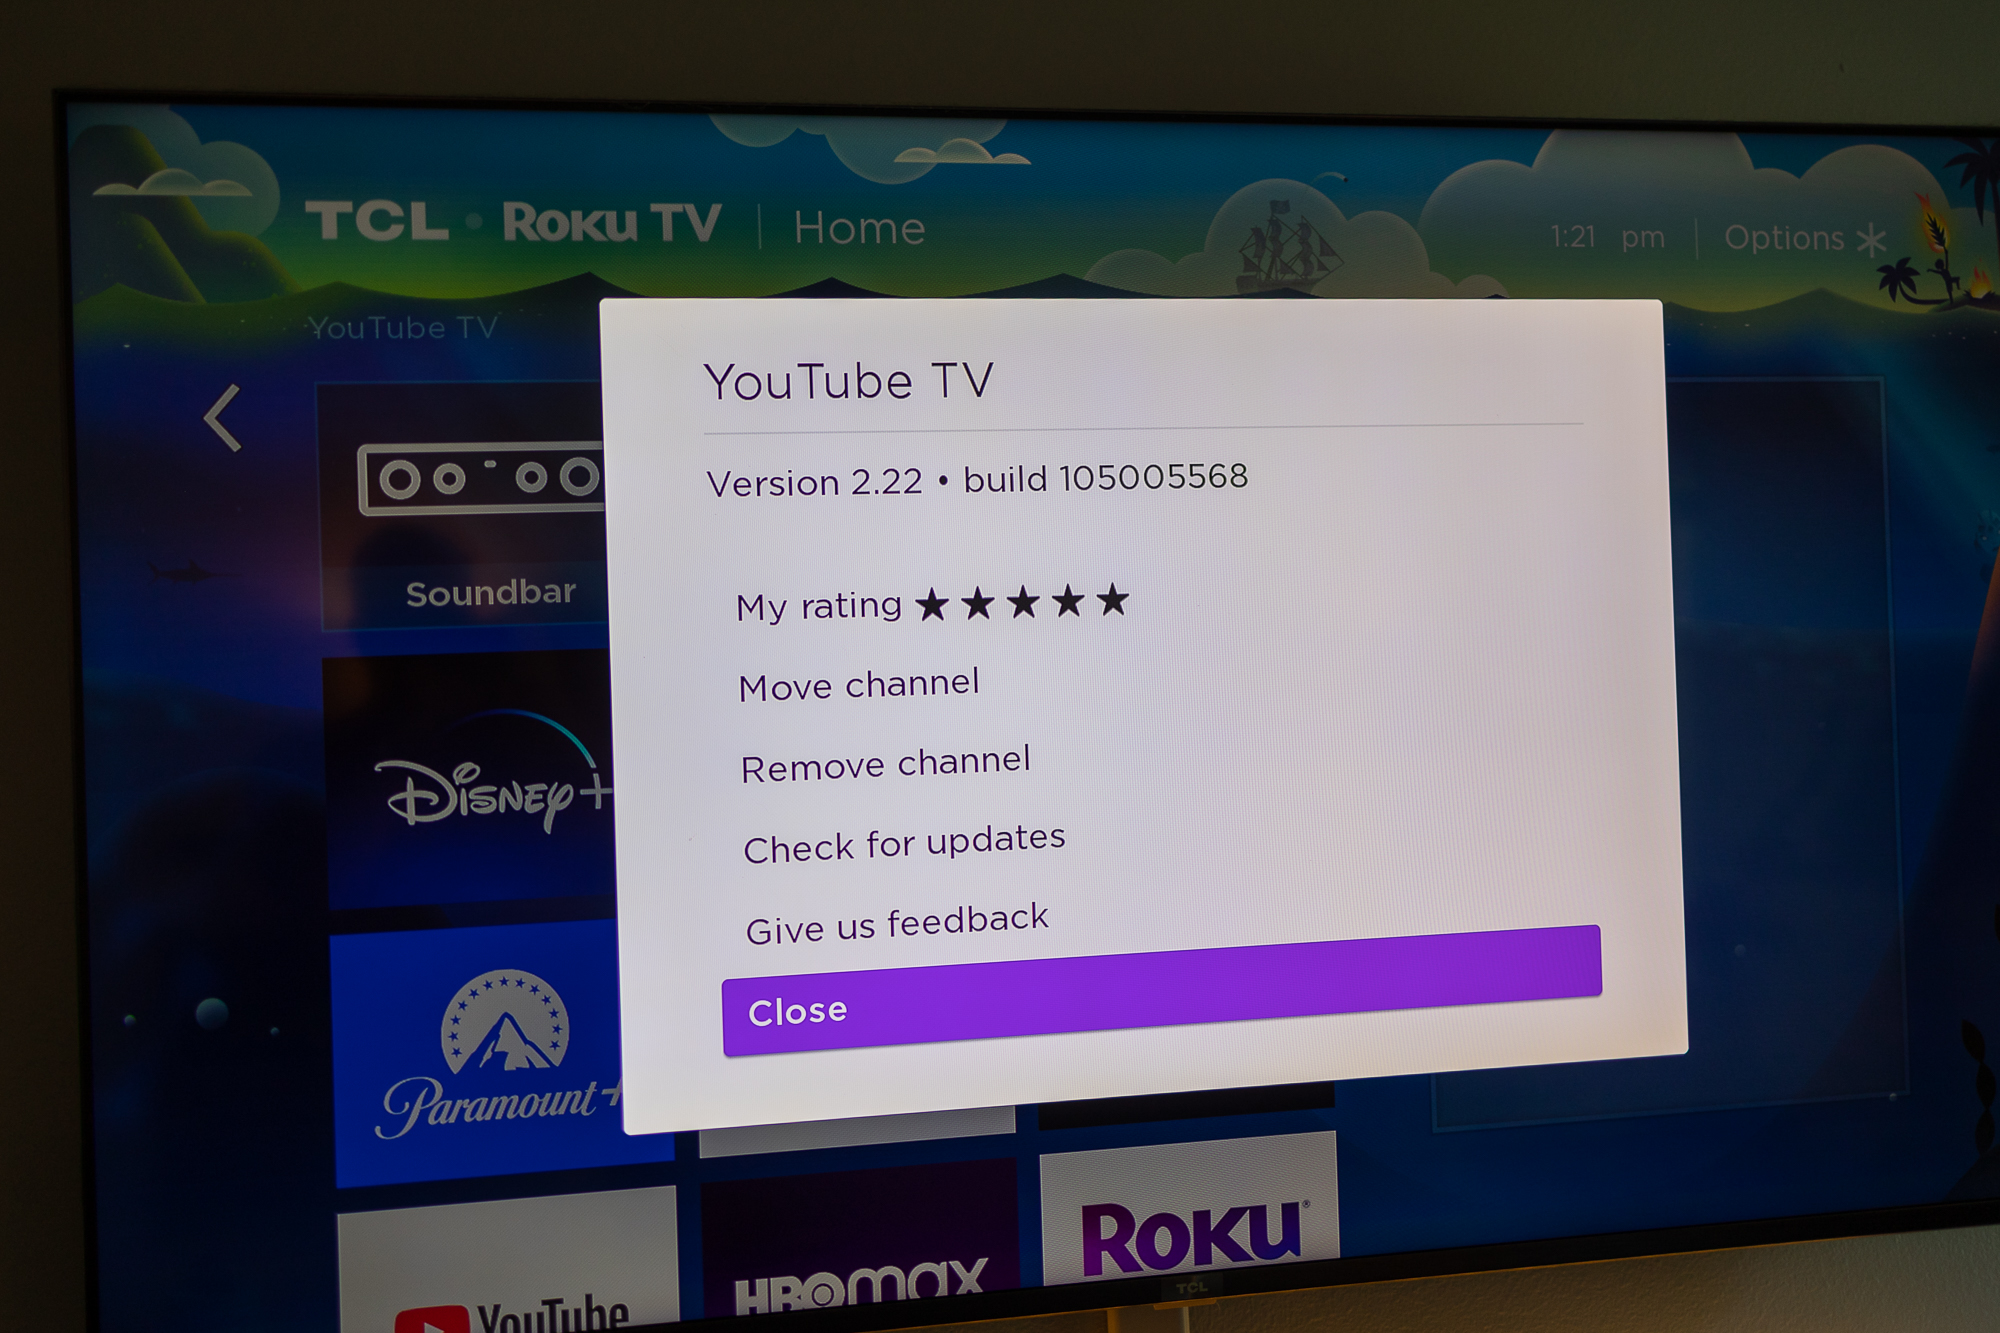 Menú del botón Roku Star en la pantalla de inicio.